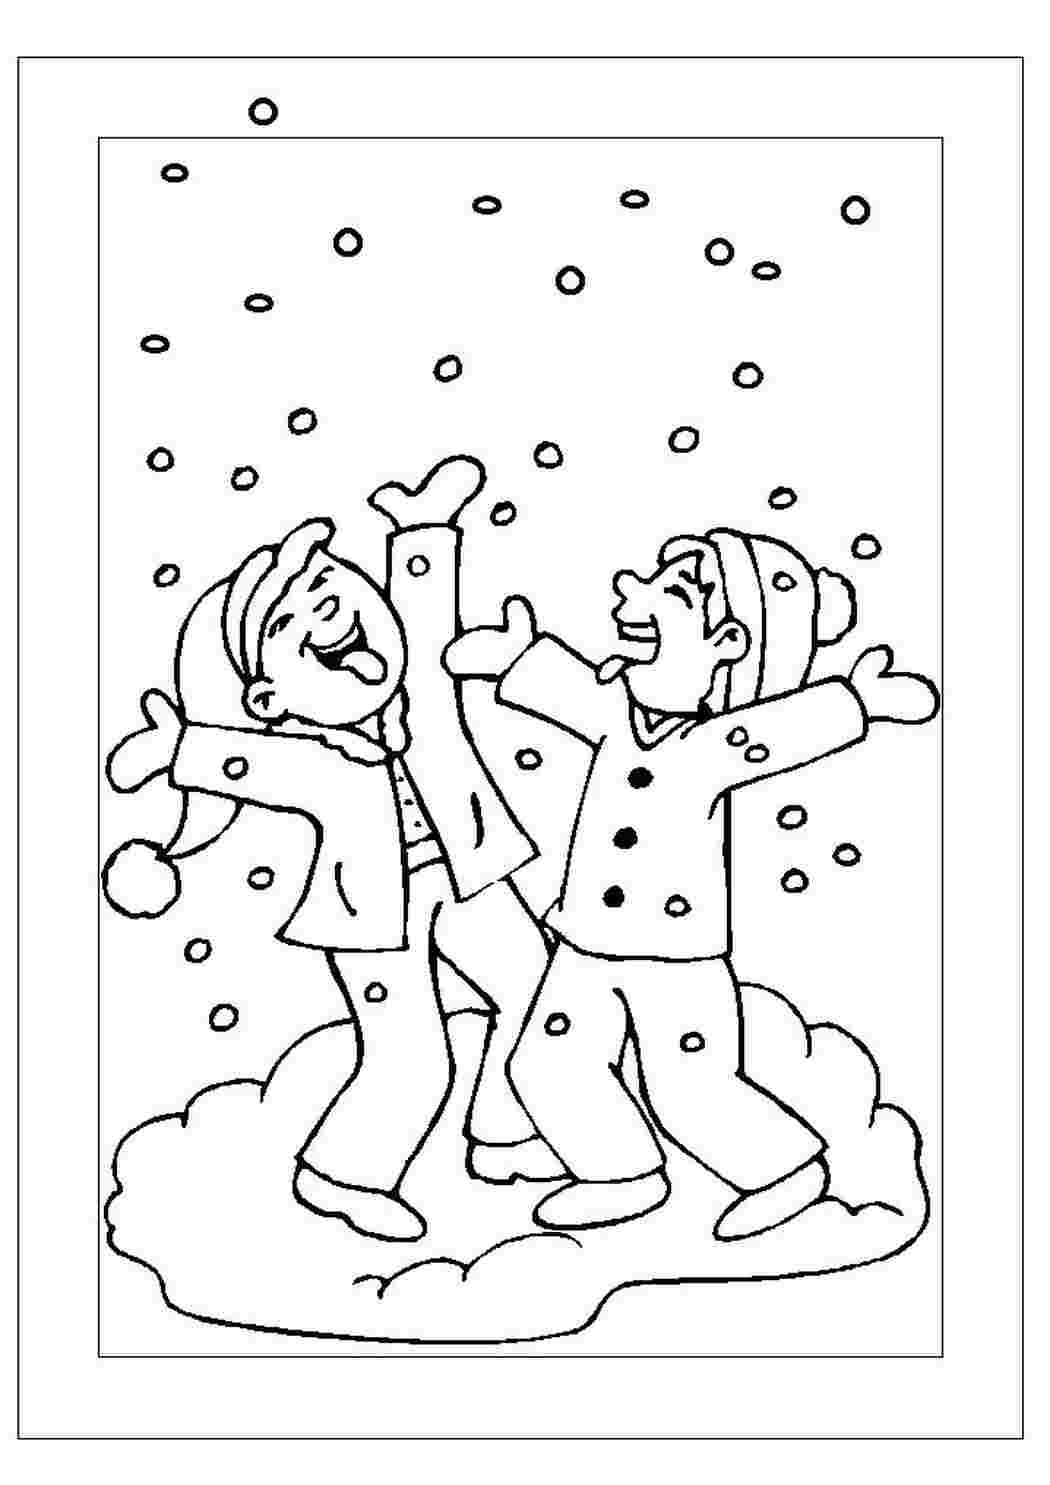 радостный первый снег для детей